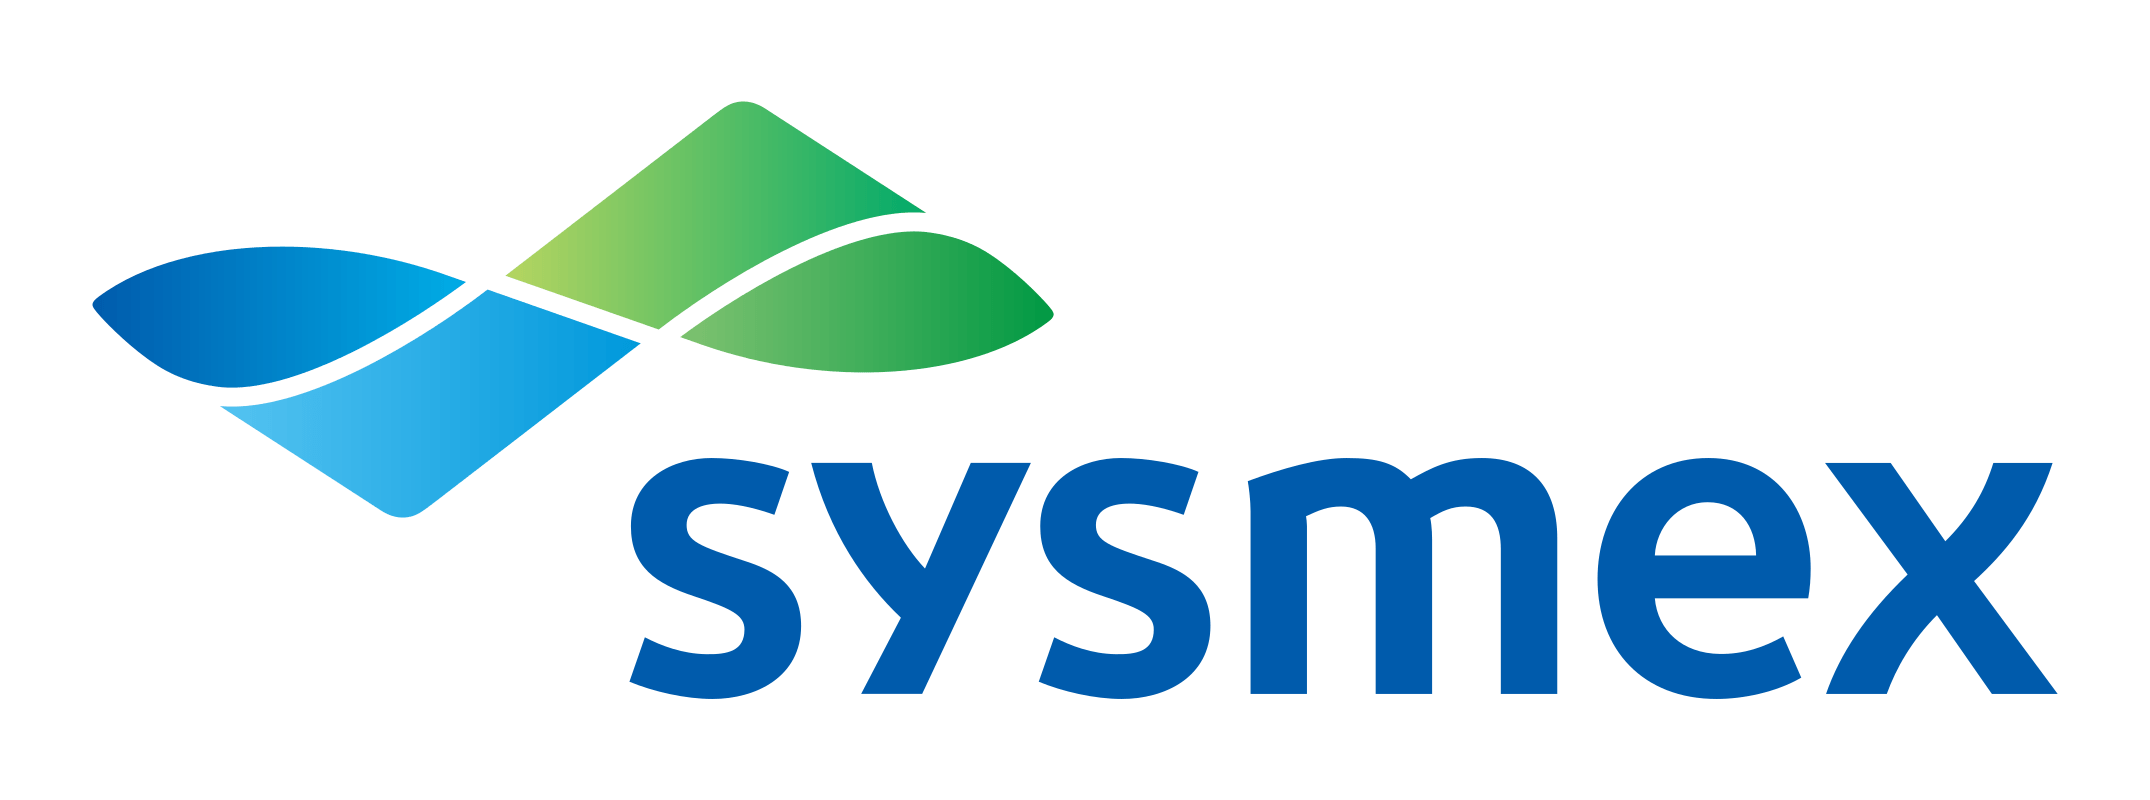 Sysmex Logo - Sysmex - Home Page